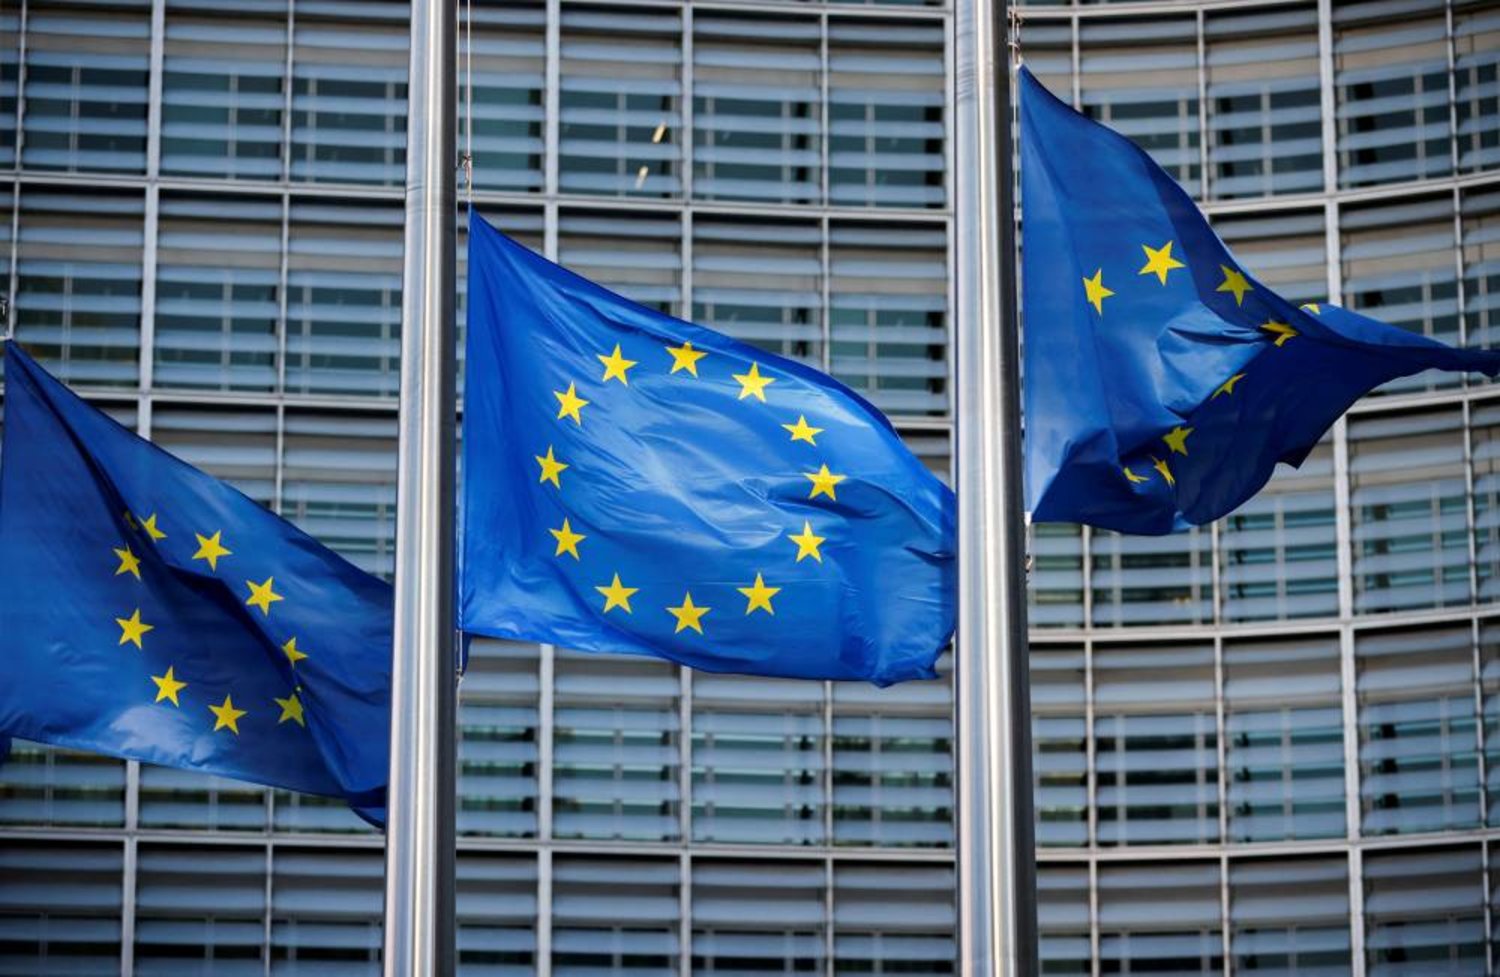 أعلام الاتحاد الأوروبي ترفرف قبالة مقر المفوضية الأوروبية في بروكسل ببلجيكا (رويترز)